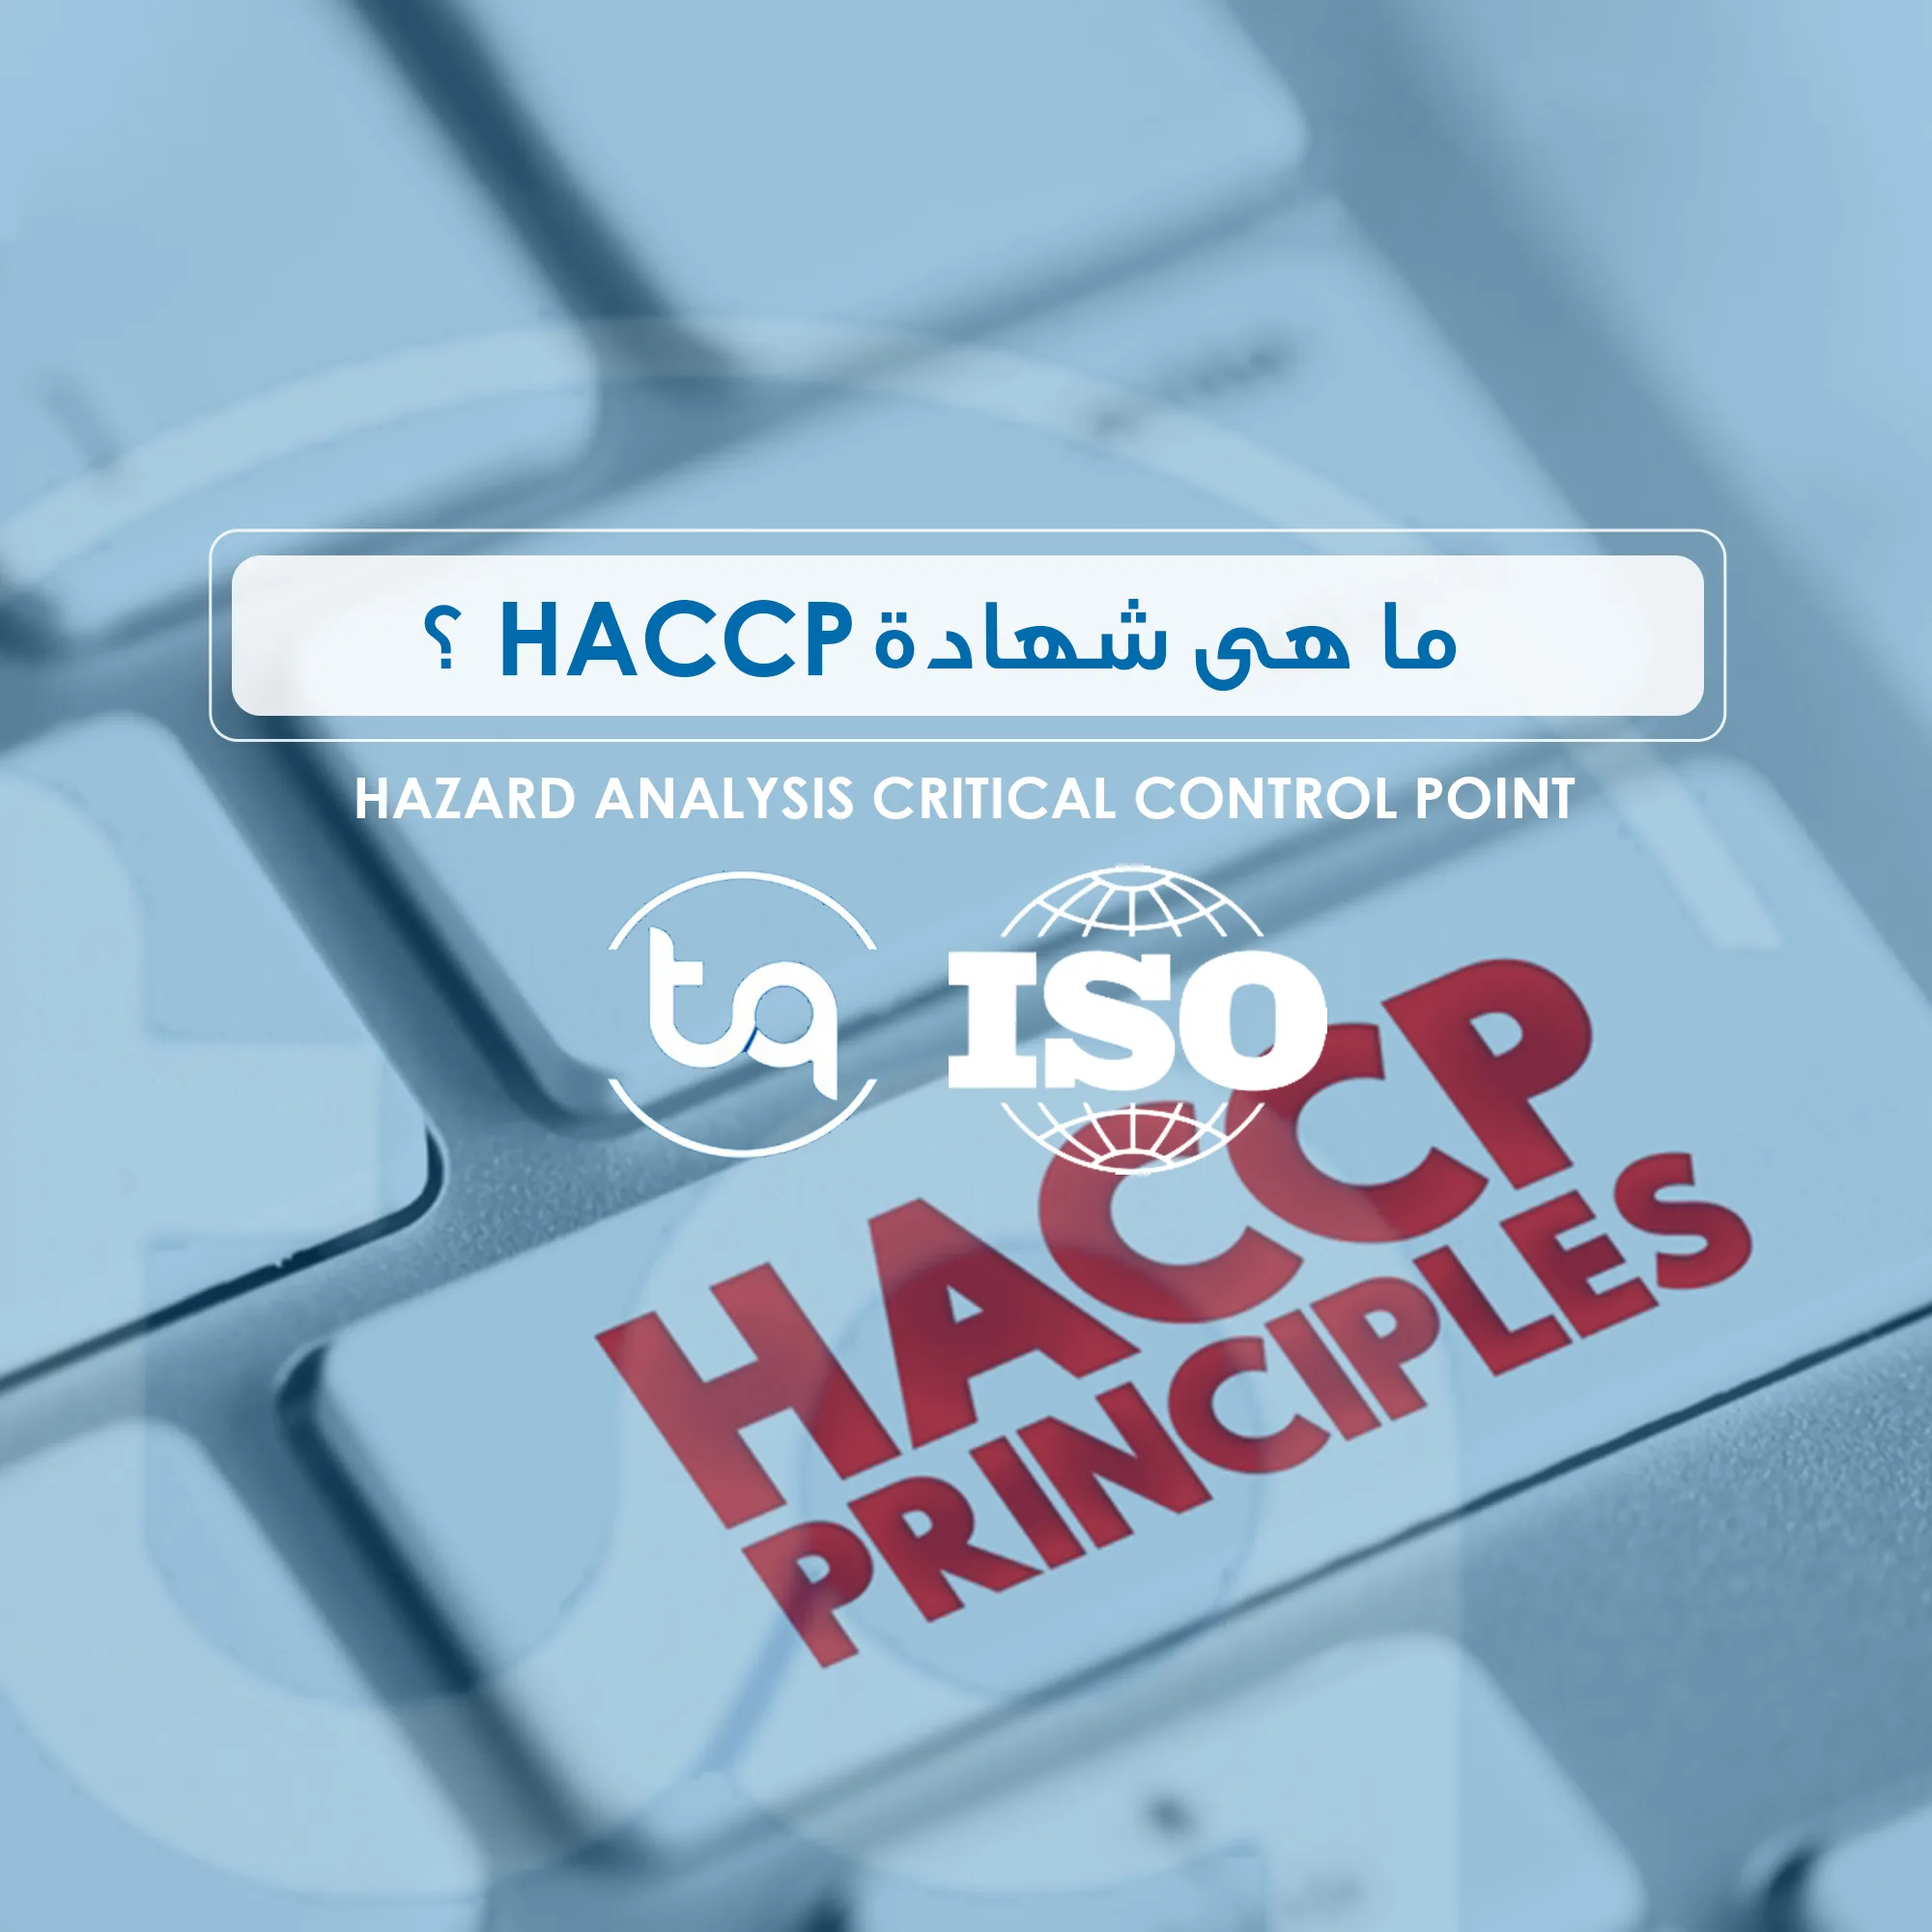 شهادة HACCP تضمن سلامة الغذاء، تعزز ثقة المستهلك، تفتح آفاق التصدير، وتحسن كفاءة العمليات. التزام الشركة بهذه المعايير يساهم في الامتثال للقوانين وتحقيق الجودة.